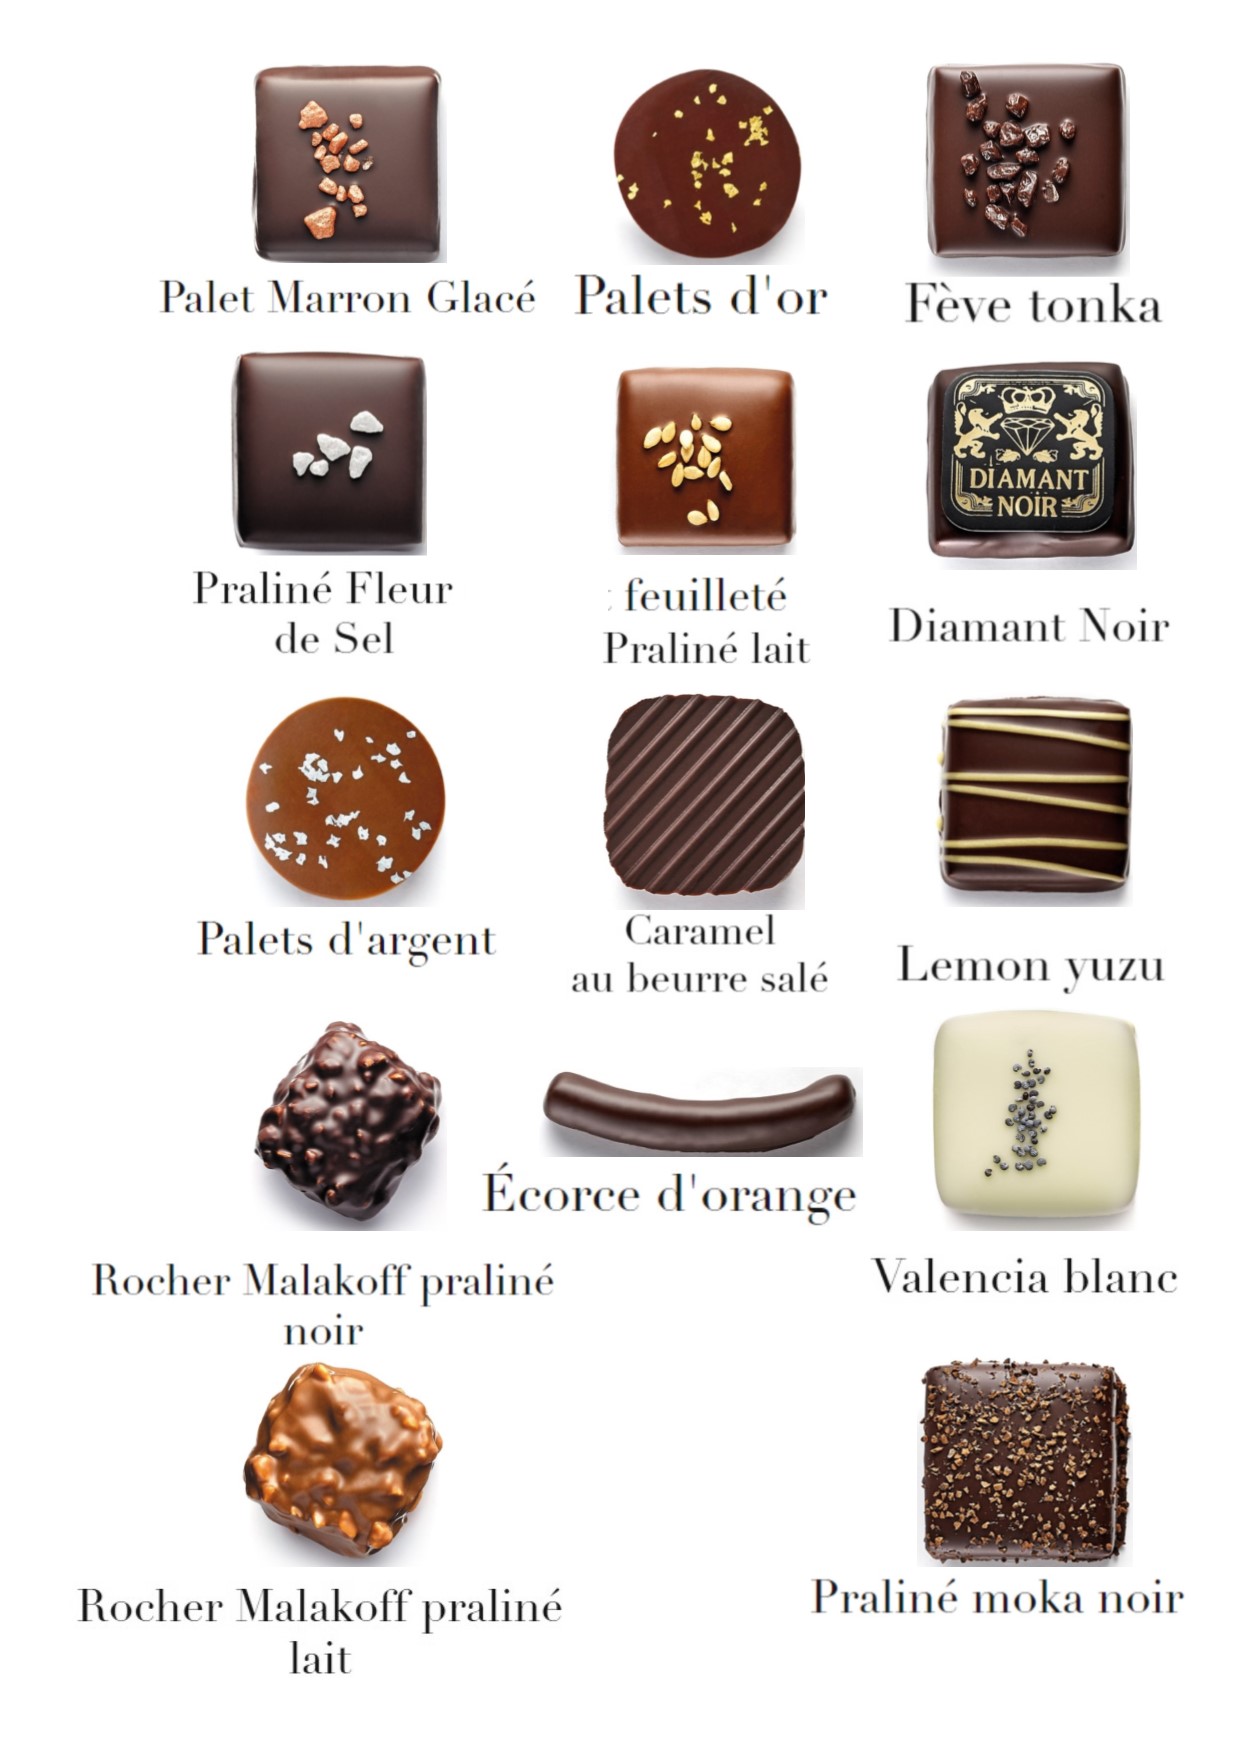 Palet chocolat blanc ingredients